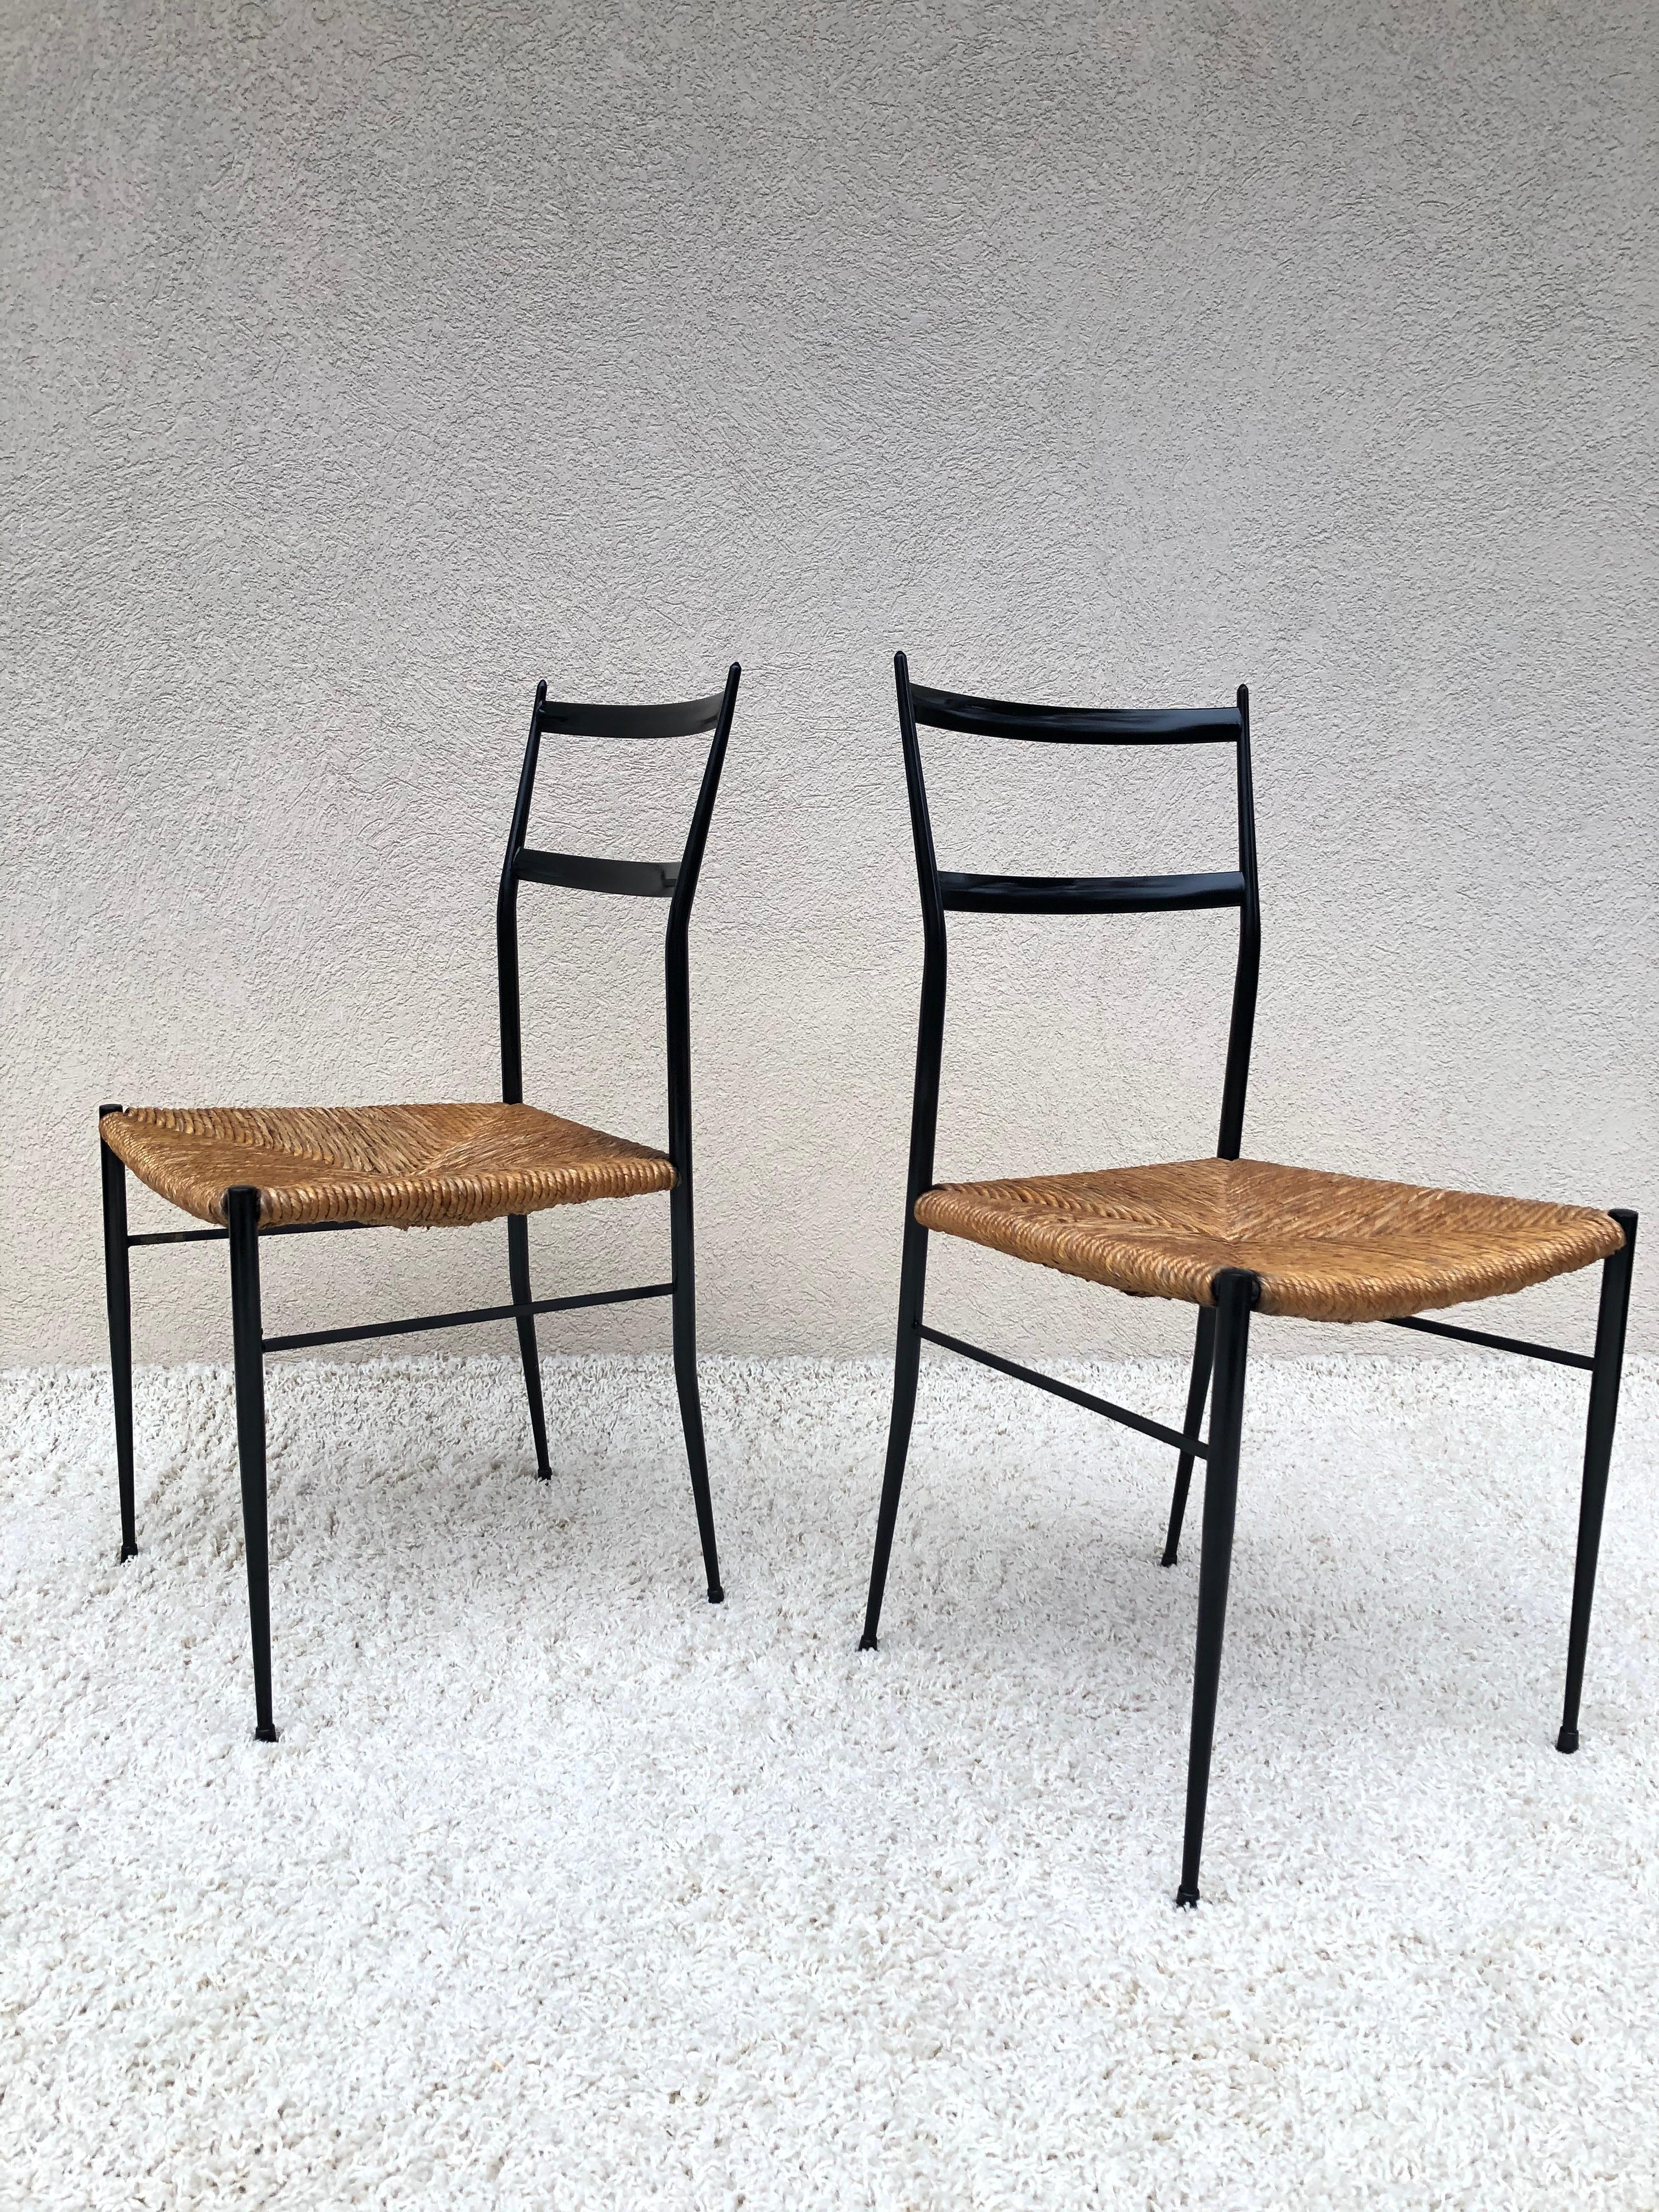 Paire de chaises inspirées de Superlegga, dans le style de Gio Ponti, vers 1960. Le design original a été réalisé pour un projet à Eindhoven, où Gio Ponti a conçu l'extérieur du bâtiment, les chaises sont en métal avec d'authentiques sièges en